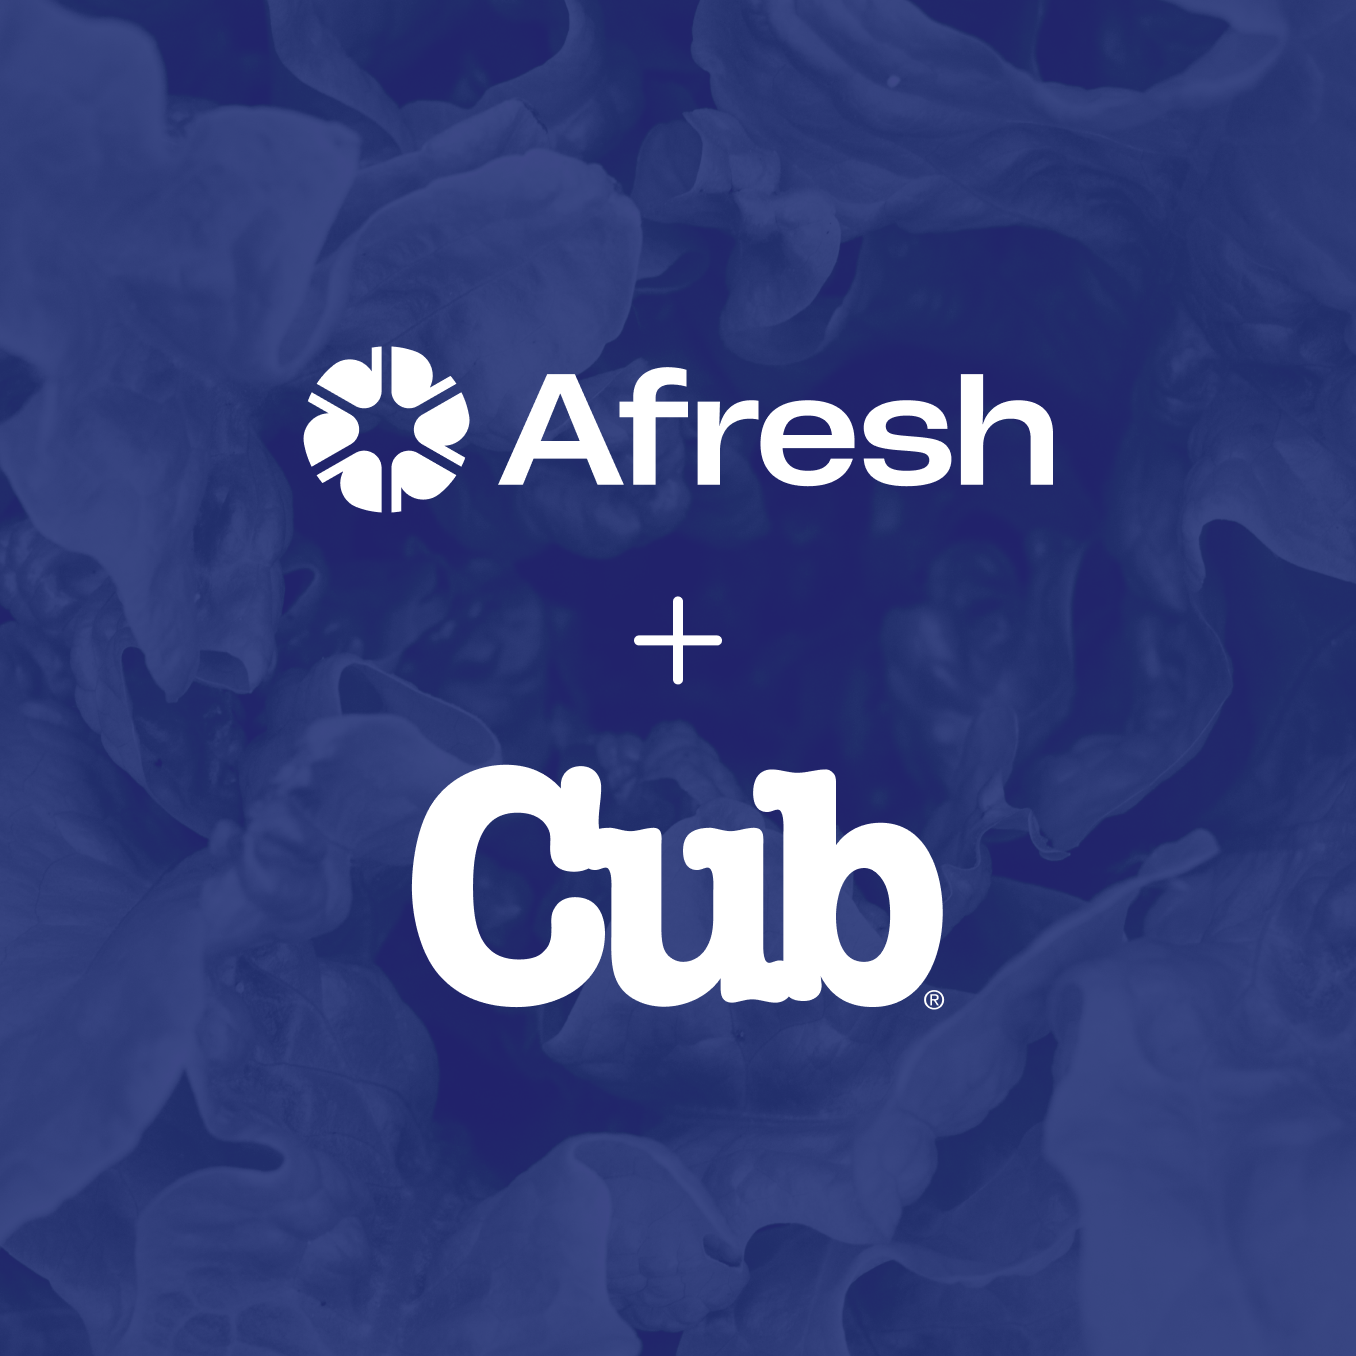 Afresh + Cub